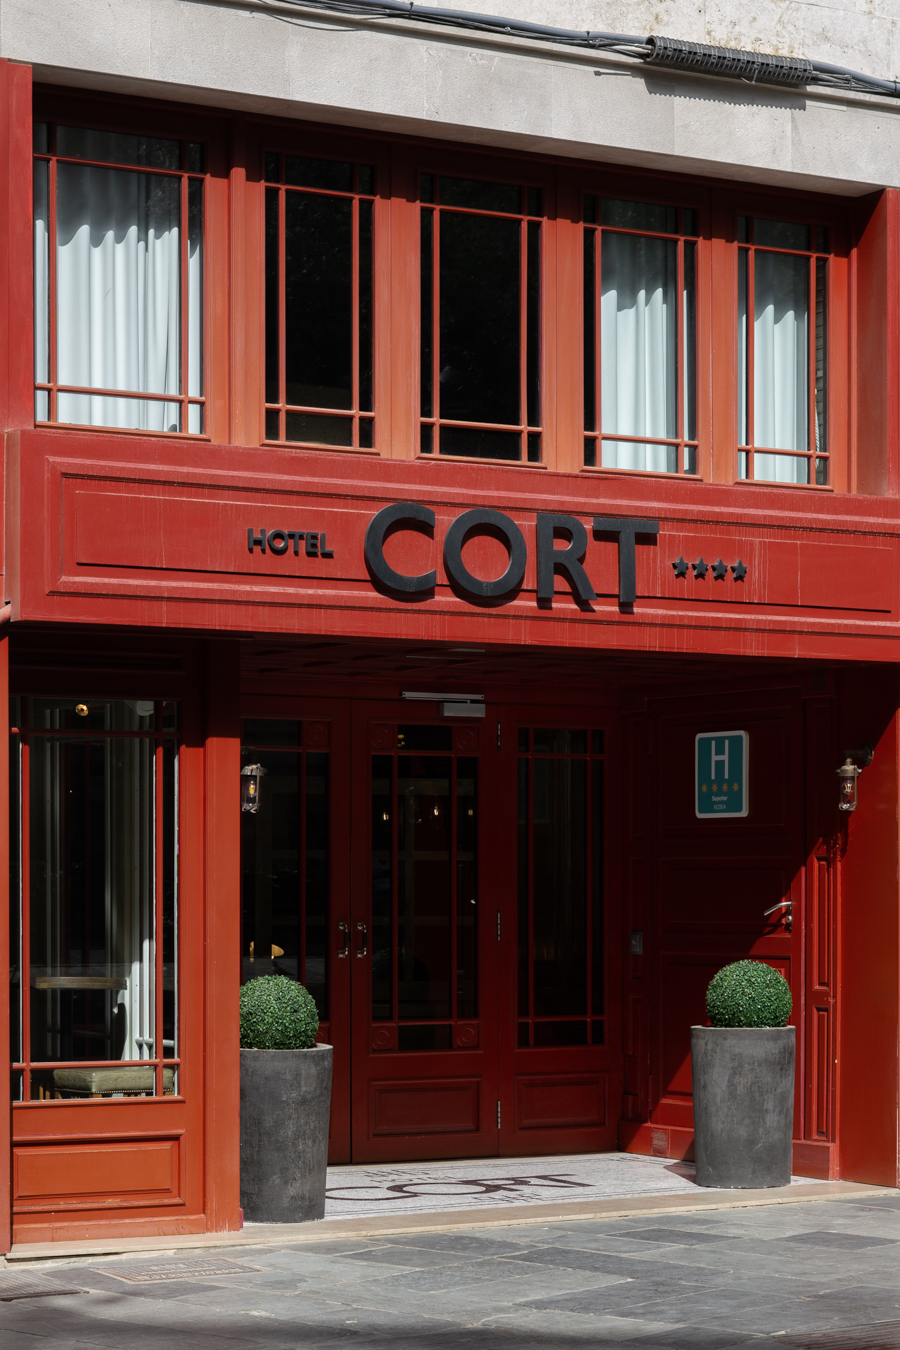 Hotel Cort, Palma de Mallorca Spain